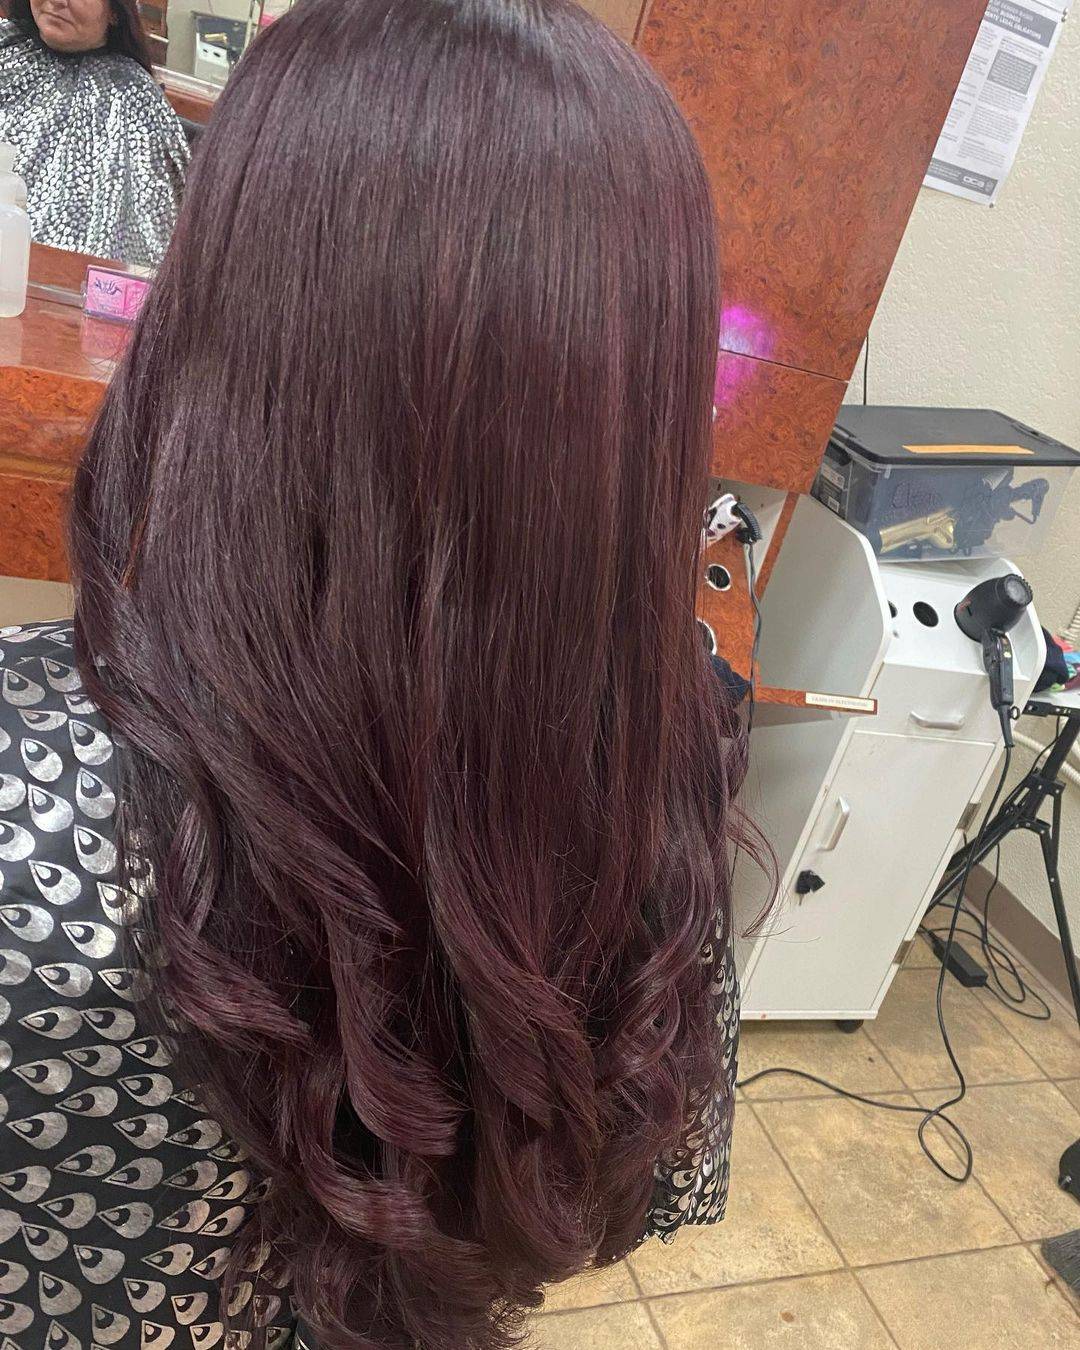 Burgundy hair color 331 burgundy hair color | burgundy hair color for women | burgundy hair color highlights Burgundy Hair Color